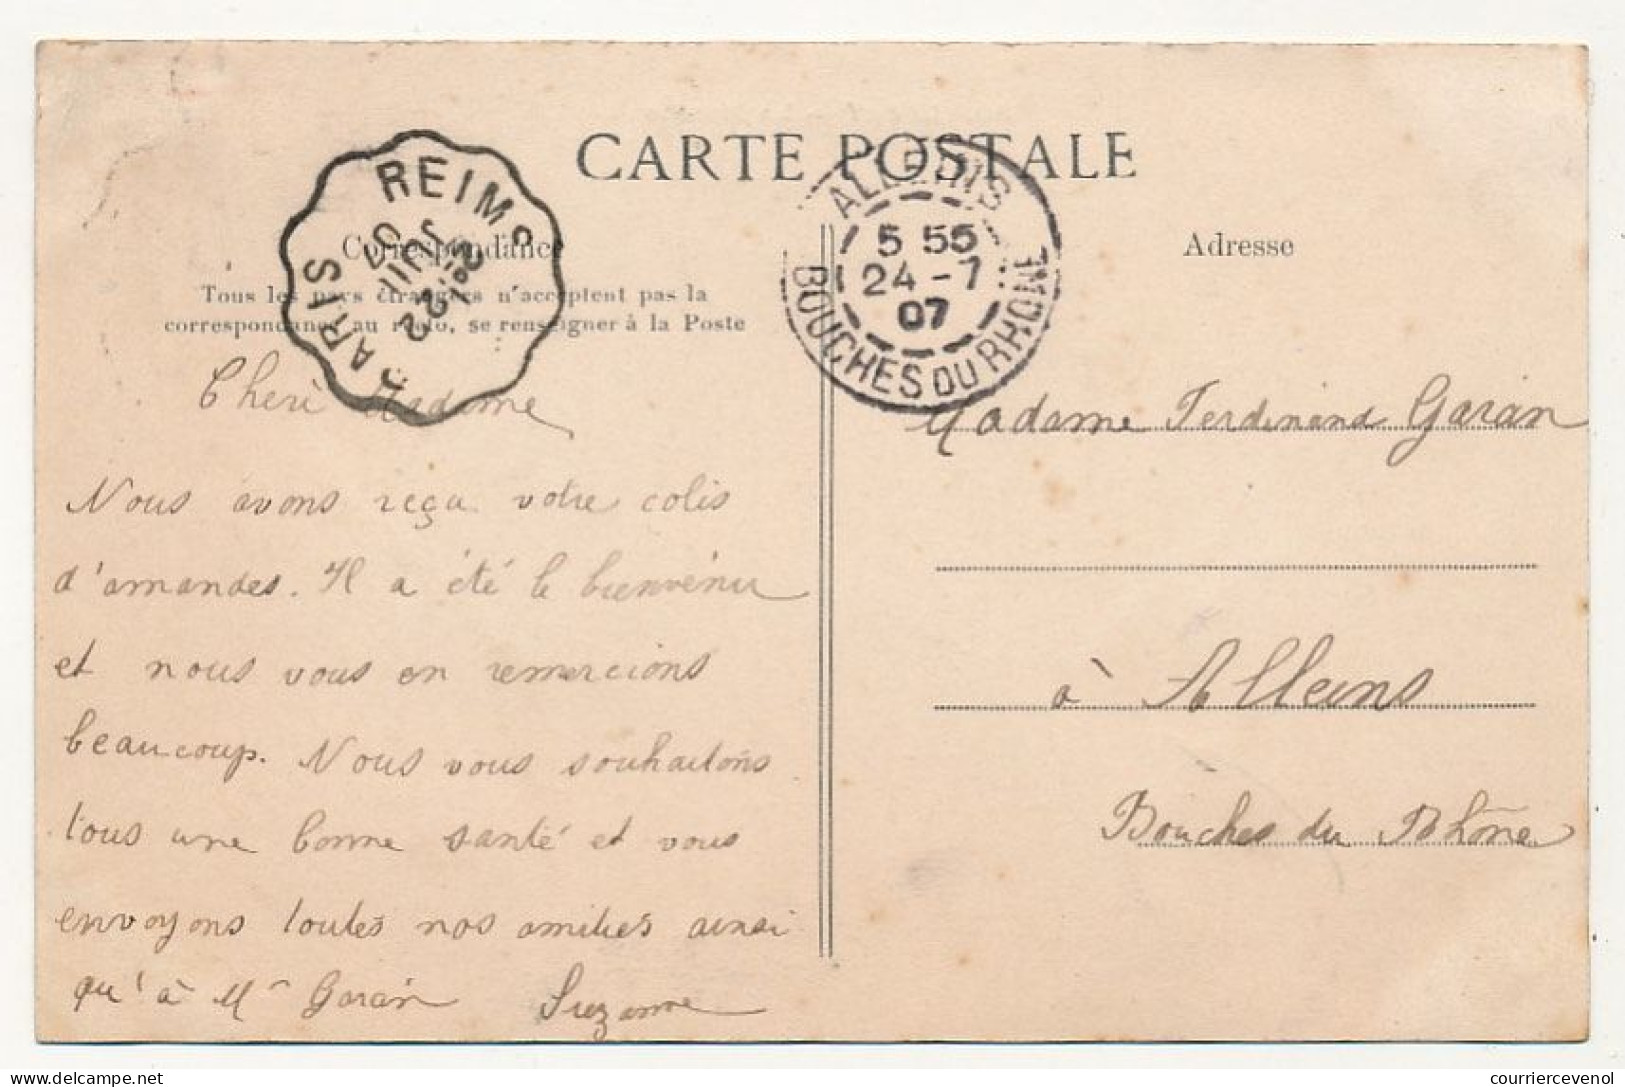 4 CPA - LIVRY (Seine et Oise) - 4 cartes ayant voyagé : Rue de Meaux, L'Abbaye, le Marché, Place de la Fontaine